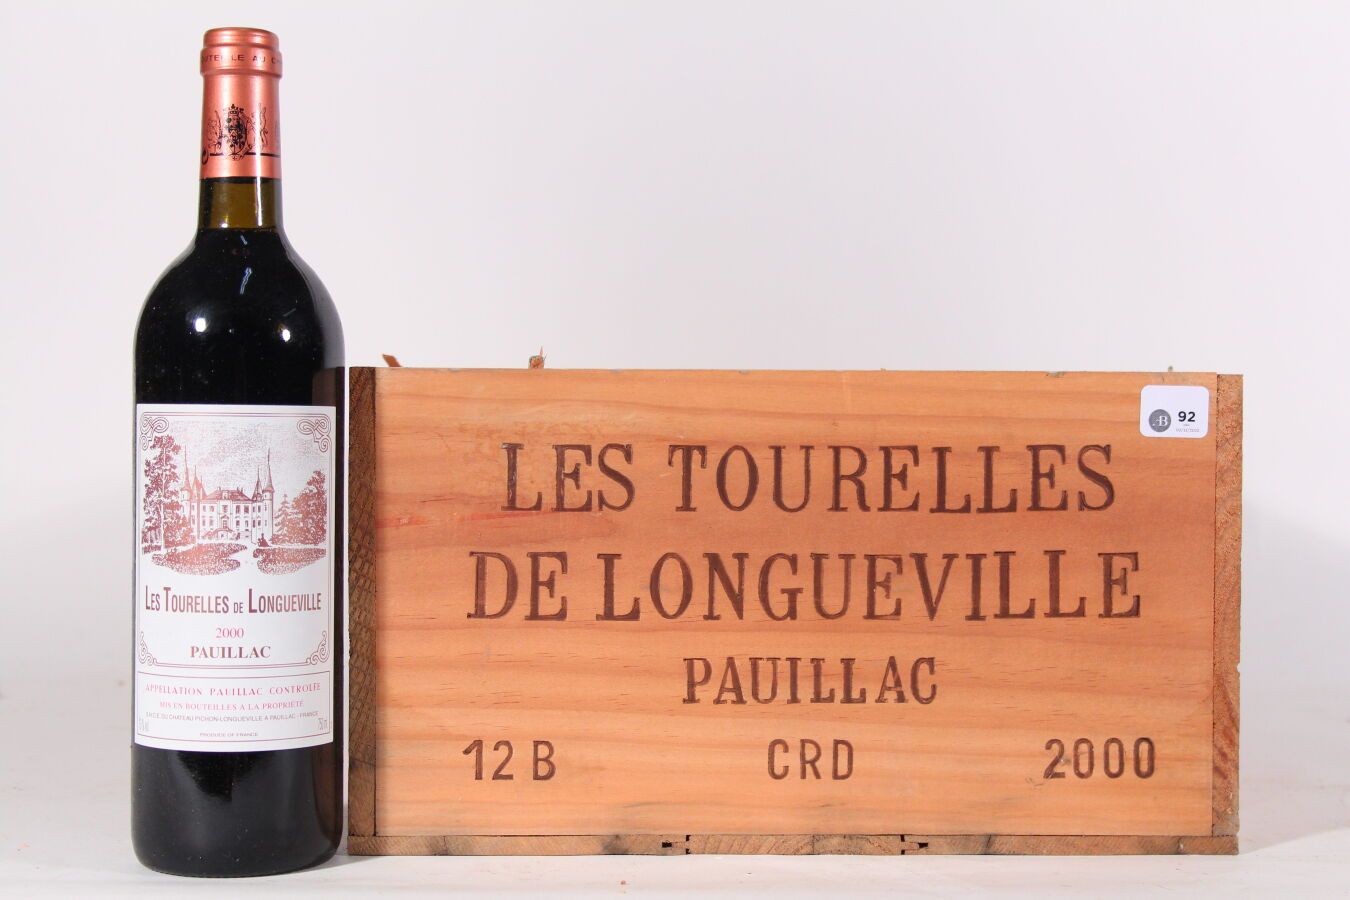 Null 2000 - Le Tourelles de Longueville
Rosso Pauillac - 12 bottiglie CBO